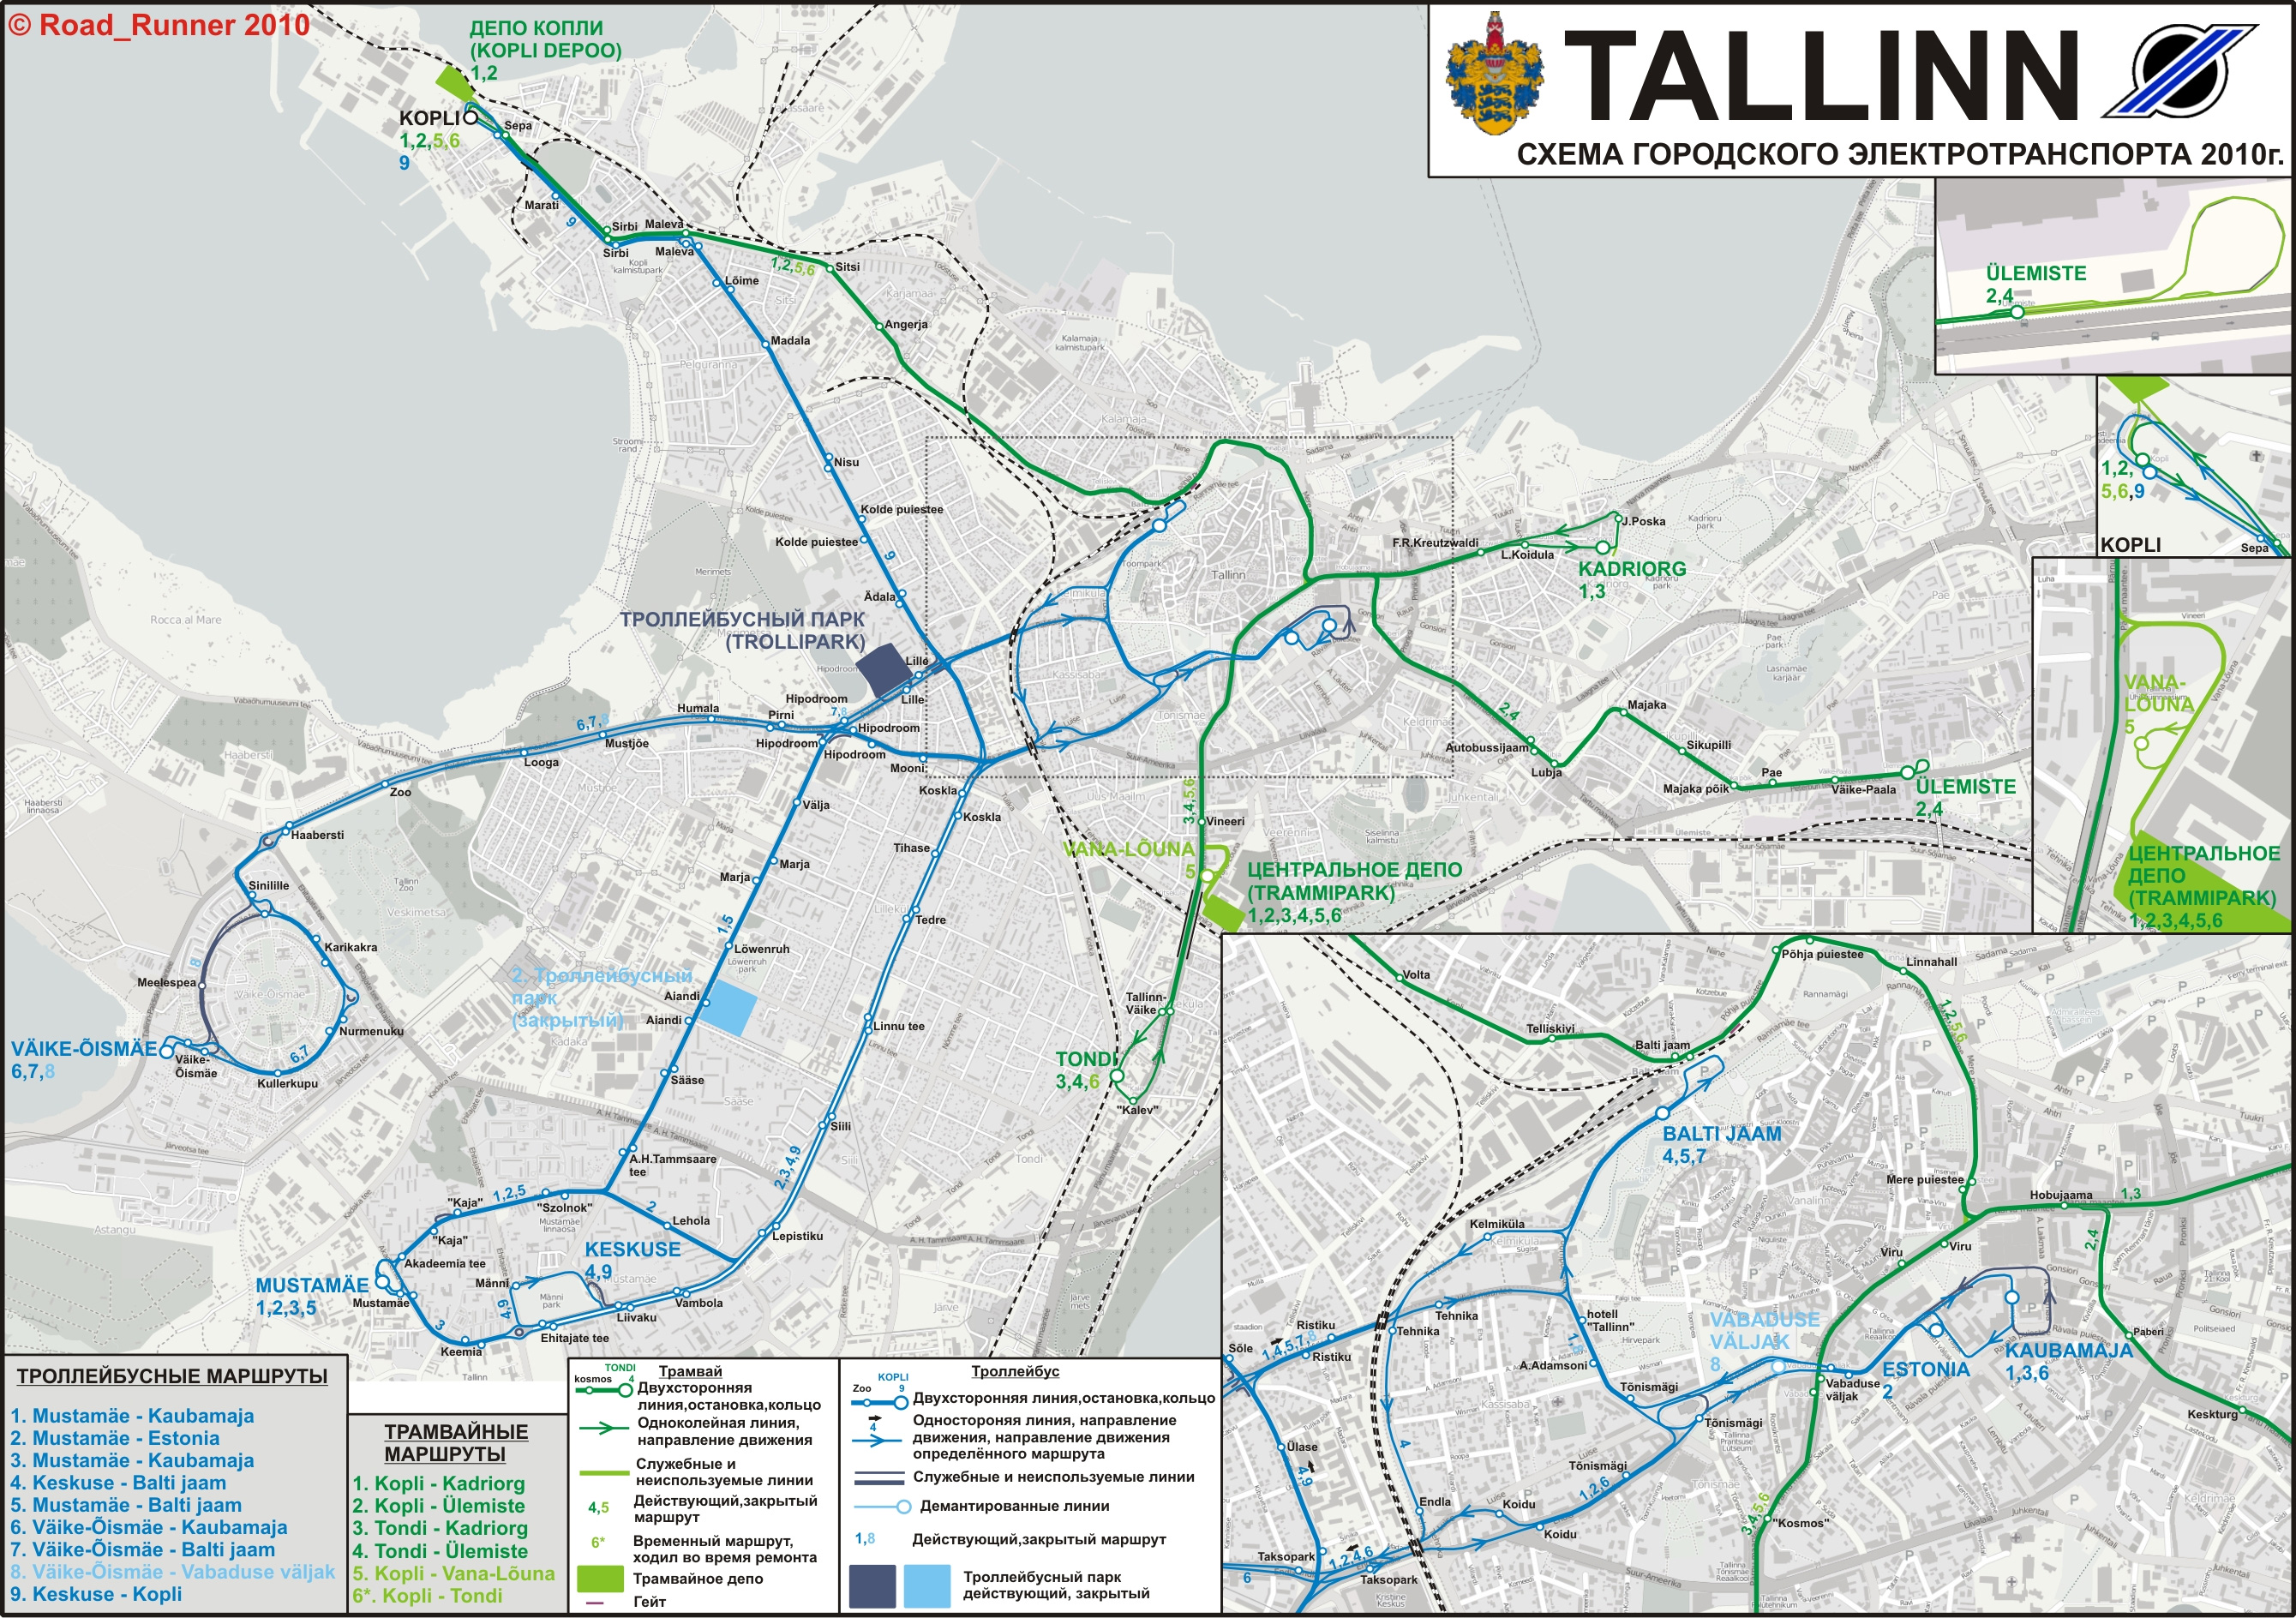 Tallinn — Maps